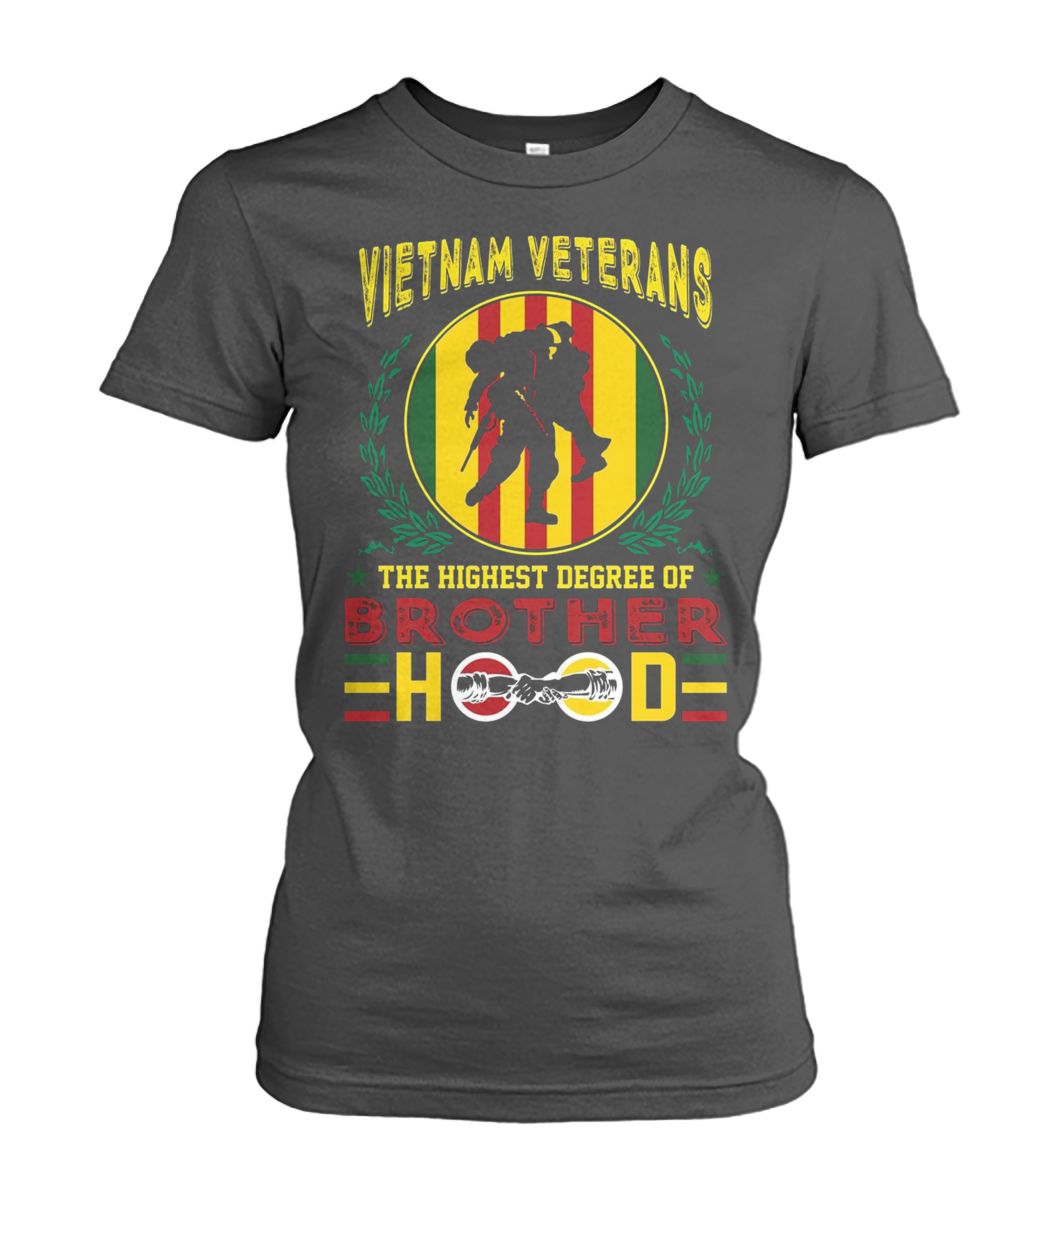 Vietnam veterans the highest degree of brotherhood women's crew tee